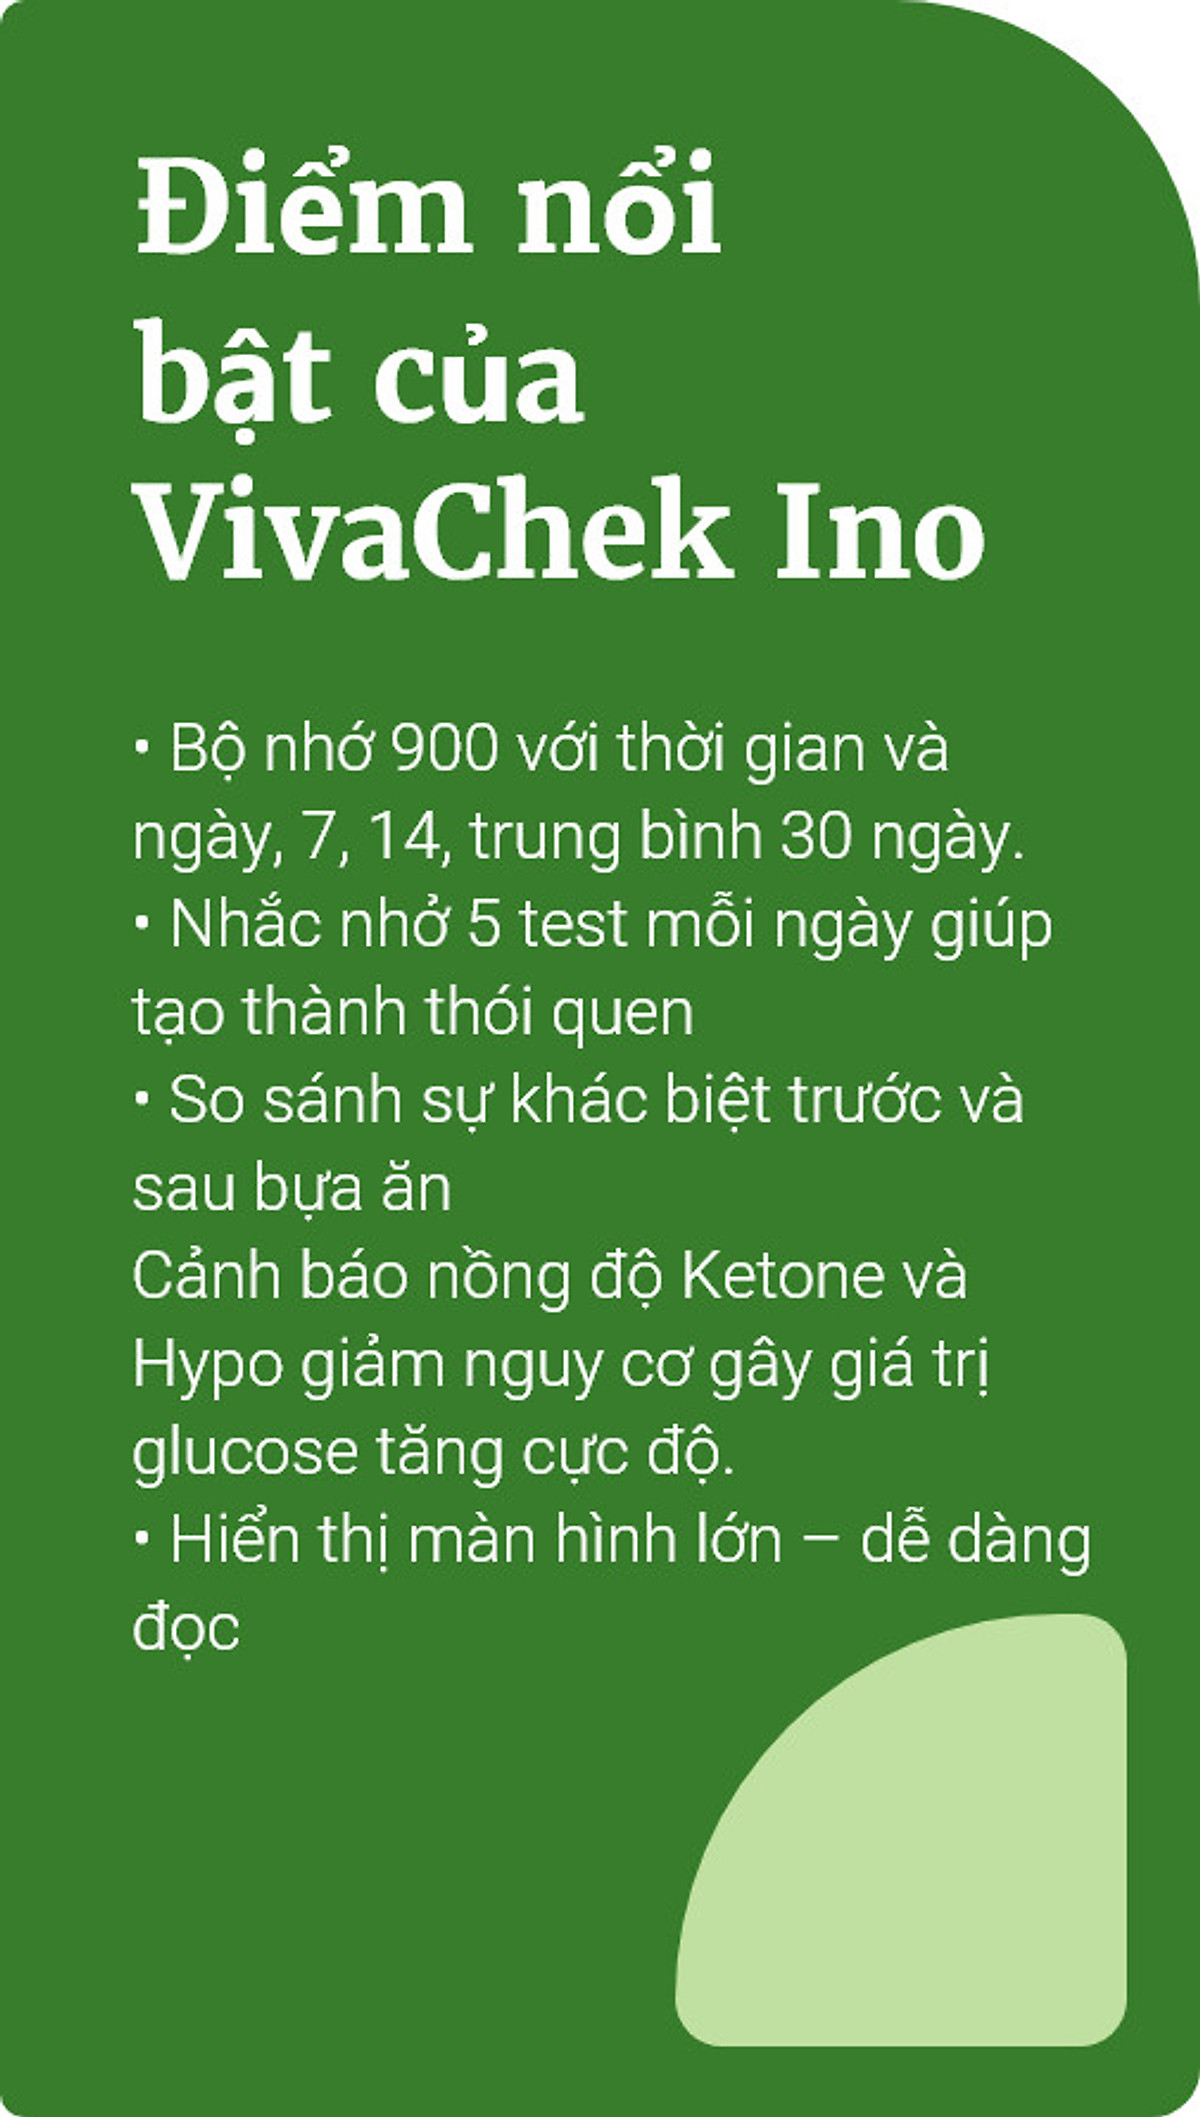 vivachek 2